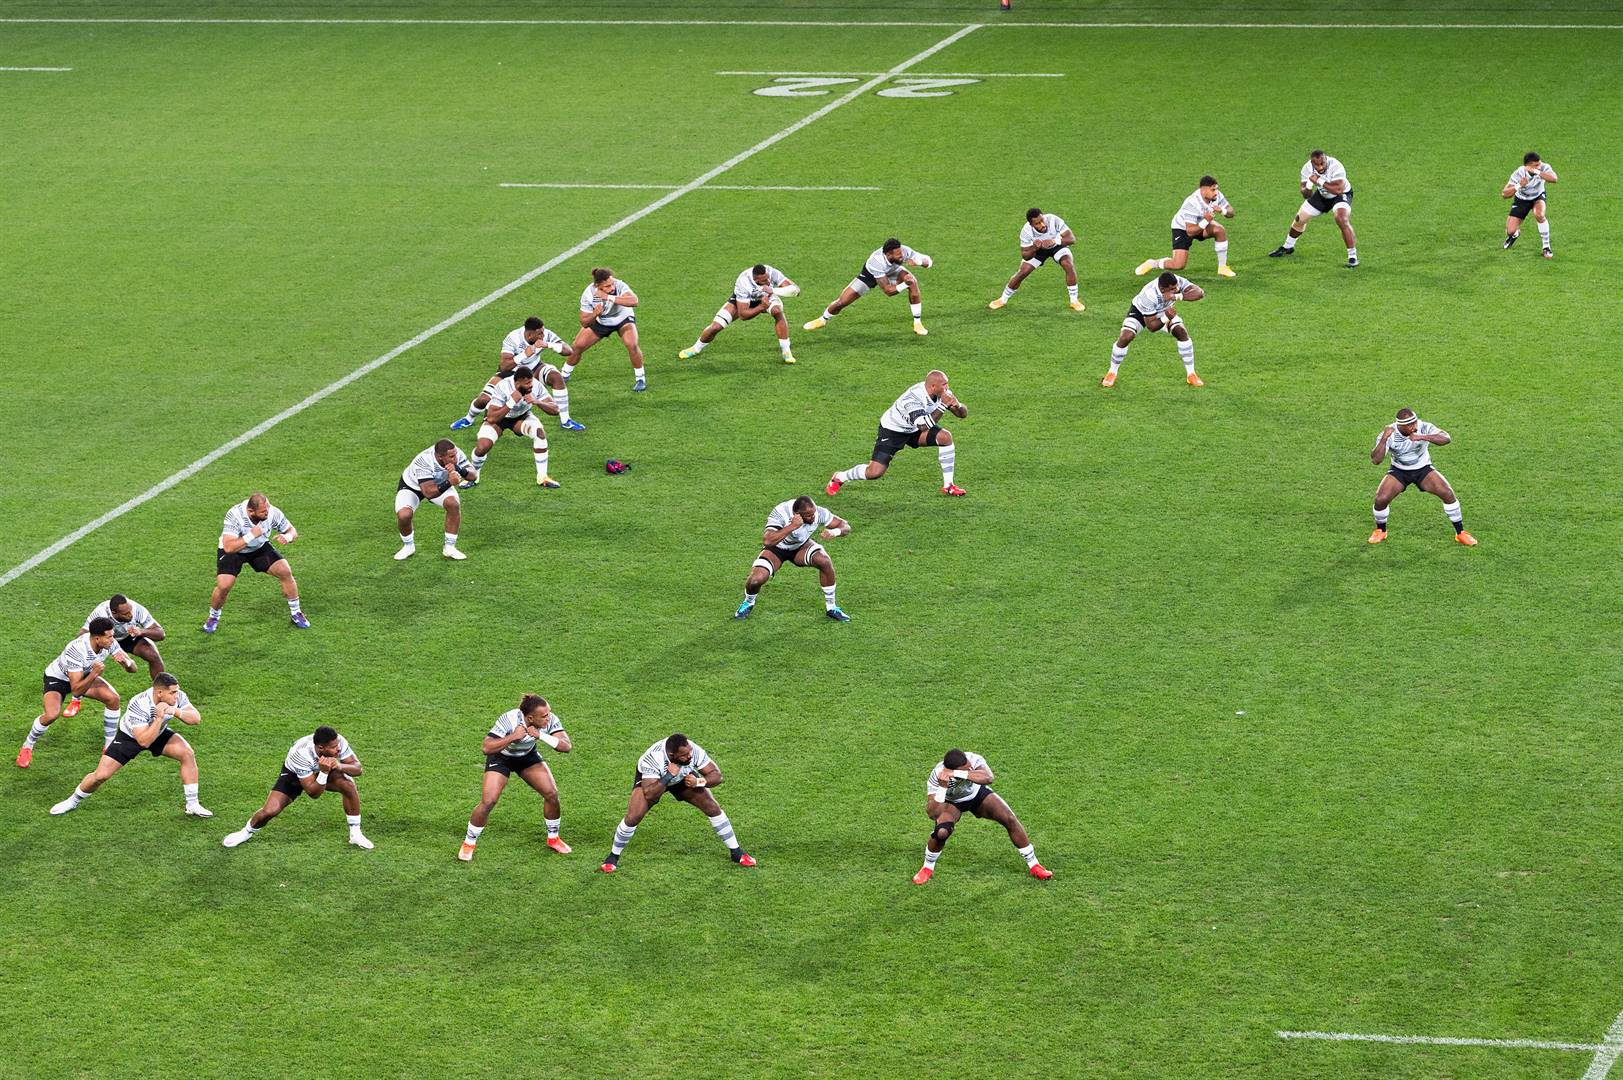 Talle van Fidji se rugbysterre sal van volgende jaar af in die nuwe Superreeks – Super Rugby Pacific – speel. Foto: Getty Images